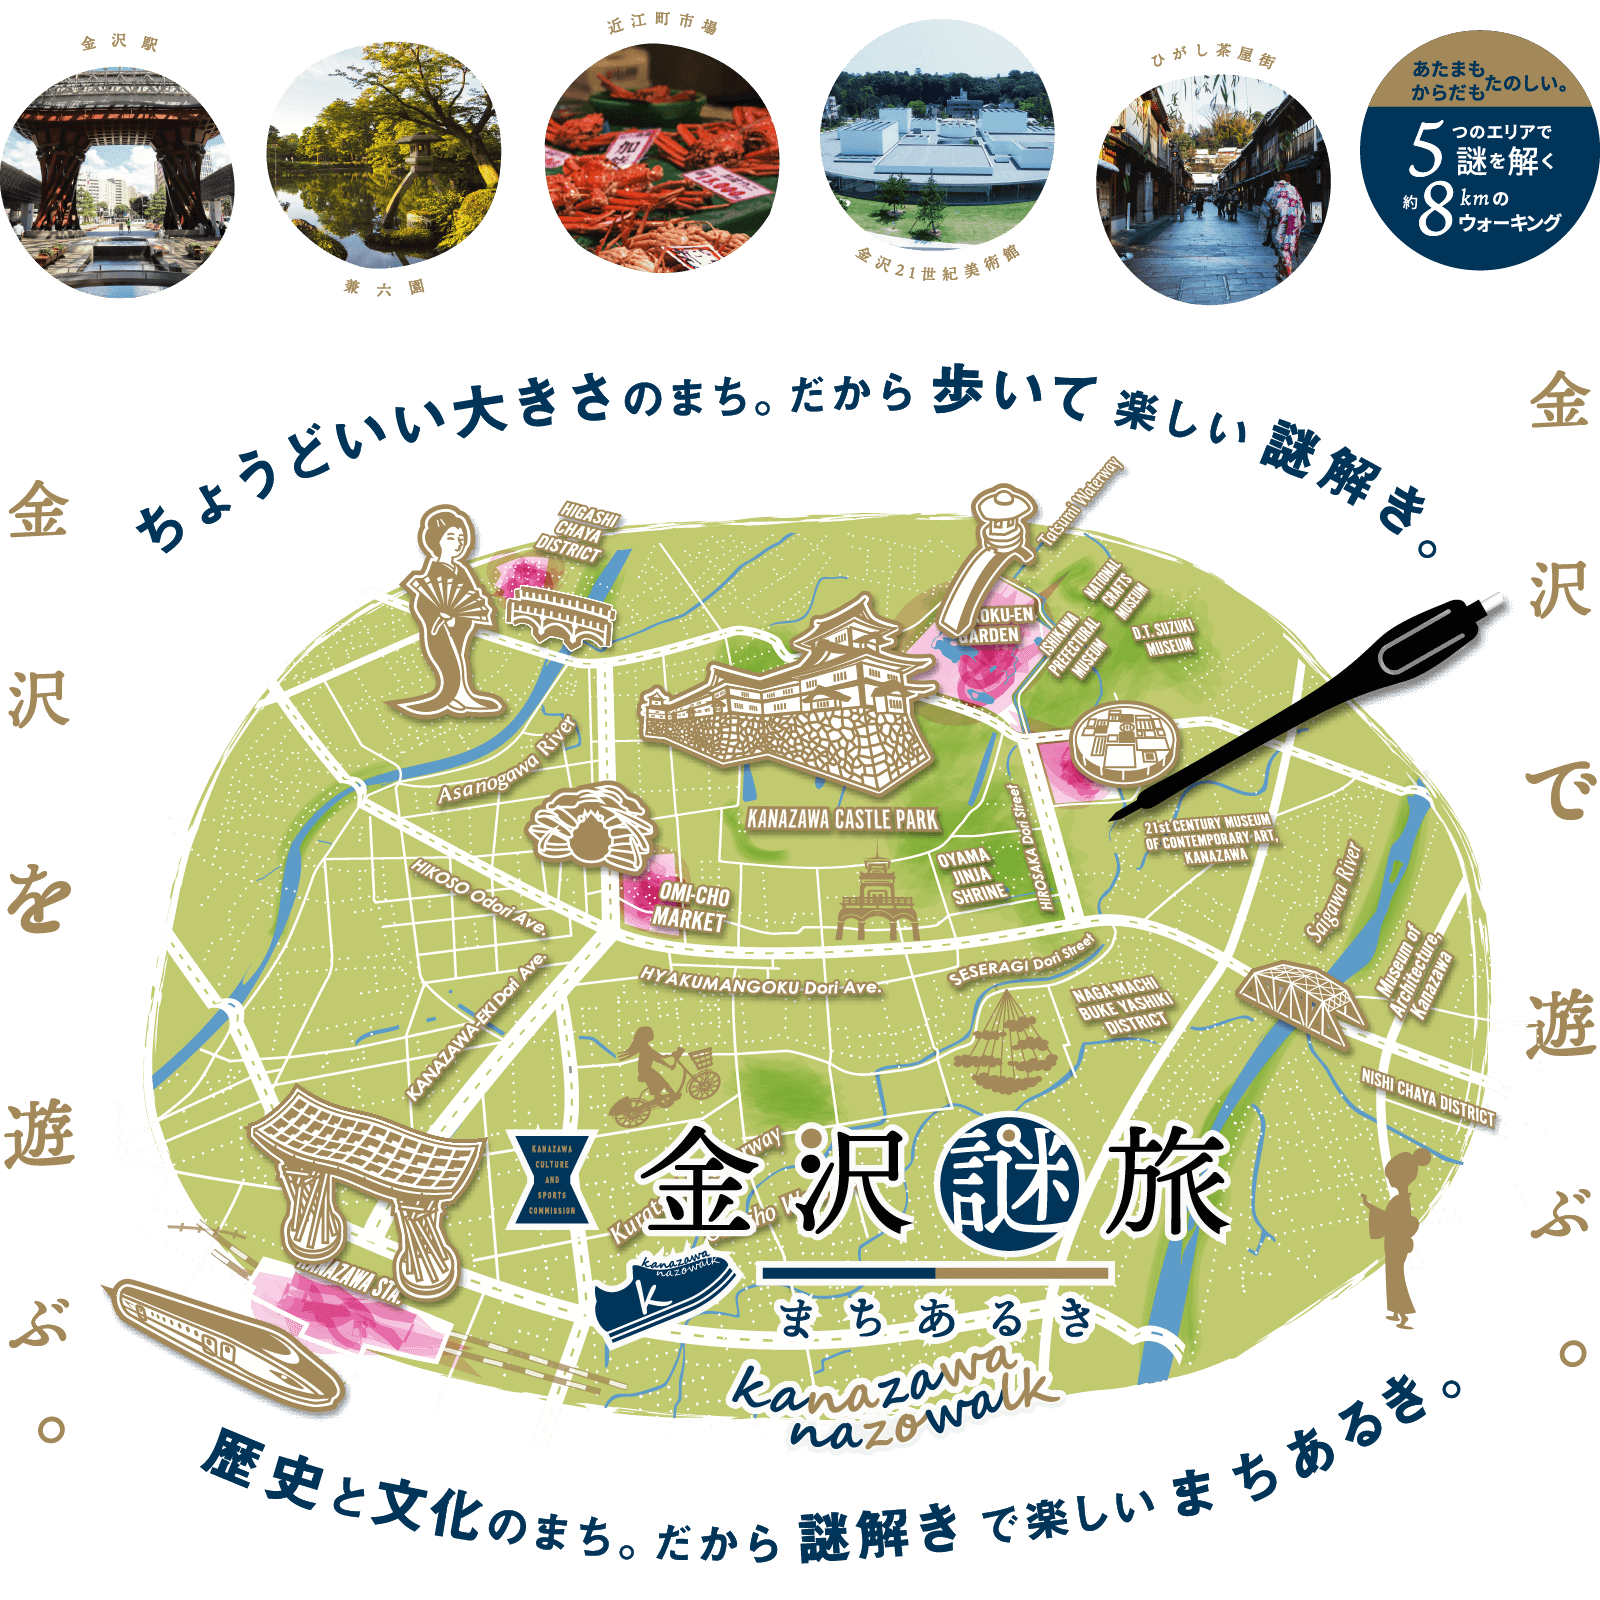 新しい観光体験『金沢謎旅まちあるき』 | 金沢文化スポーツコミッション